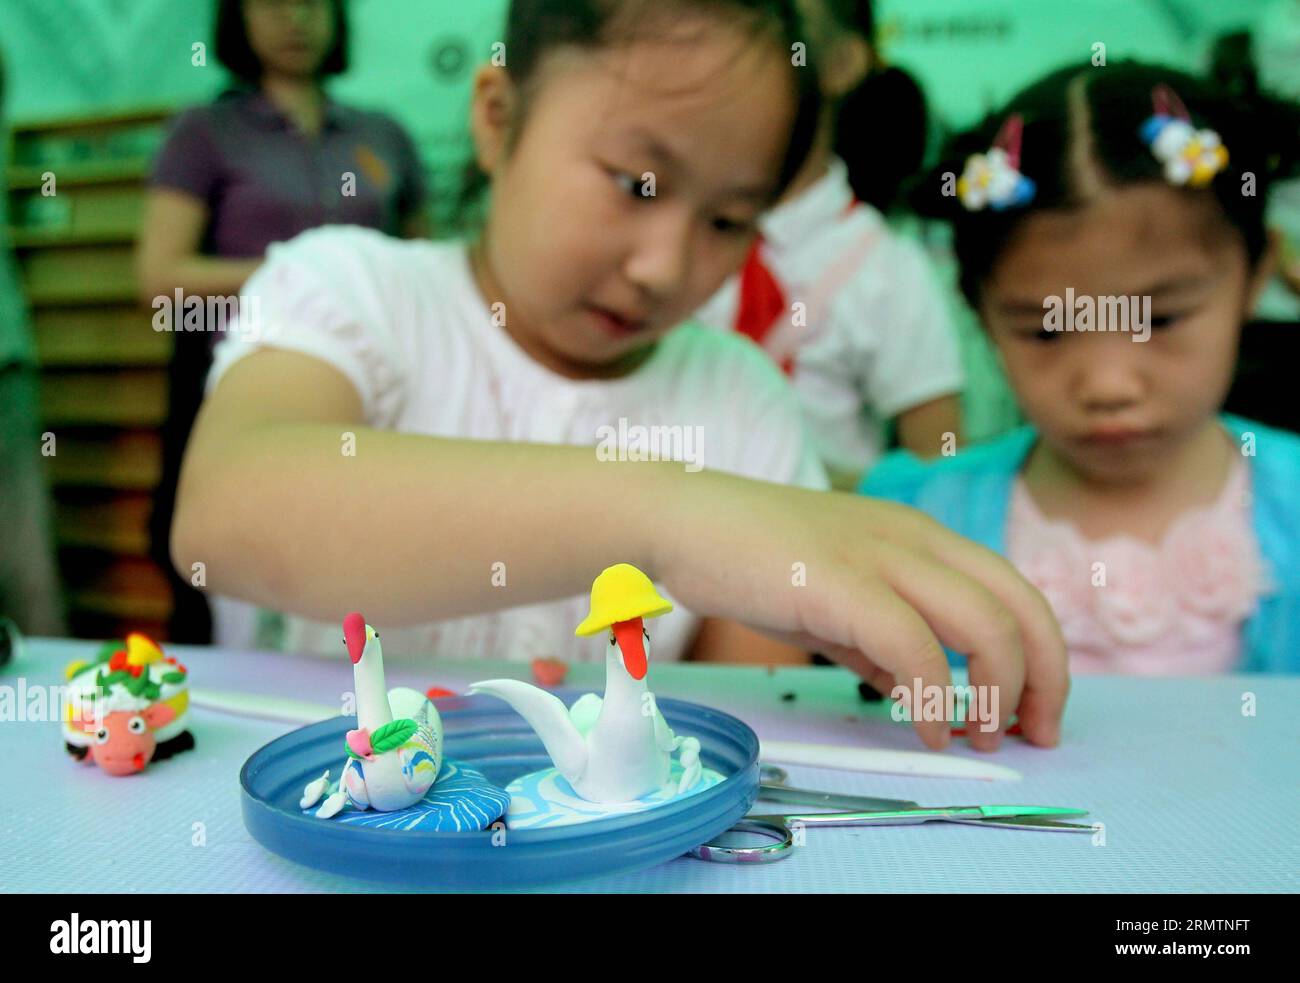 Un élève d’une école primaire fait une démonstration de modelage de pâte lors d’une exposition sur le patrimoine culturel immatériel au parc Xiangyang à Shanghai, dans l’est de la Chine, le 13 septembre 2014. Au cours des 9 dernières années, Shanghai a organisé plus de 100 activités de formation culturelle, qui ont attiré plus de 1 millions d ' étudiants. (wyl) CHINE-SHANGHAI-EXPOSITION SUR LE PATRIMOINE CULTUREL IMMATÉRIEL (CN) LiuxYing PUBLICATIONxNOTxINxCHN un élève de l'école primaire fait une démonstration de modelage de pâte à L'exposition du patrimoine culturel immatériel AU parc Xiang Yang à Shanghai East China sept 13 2014 au cours des 9 dernières années Shanghai a fourni Banque D'Images